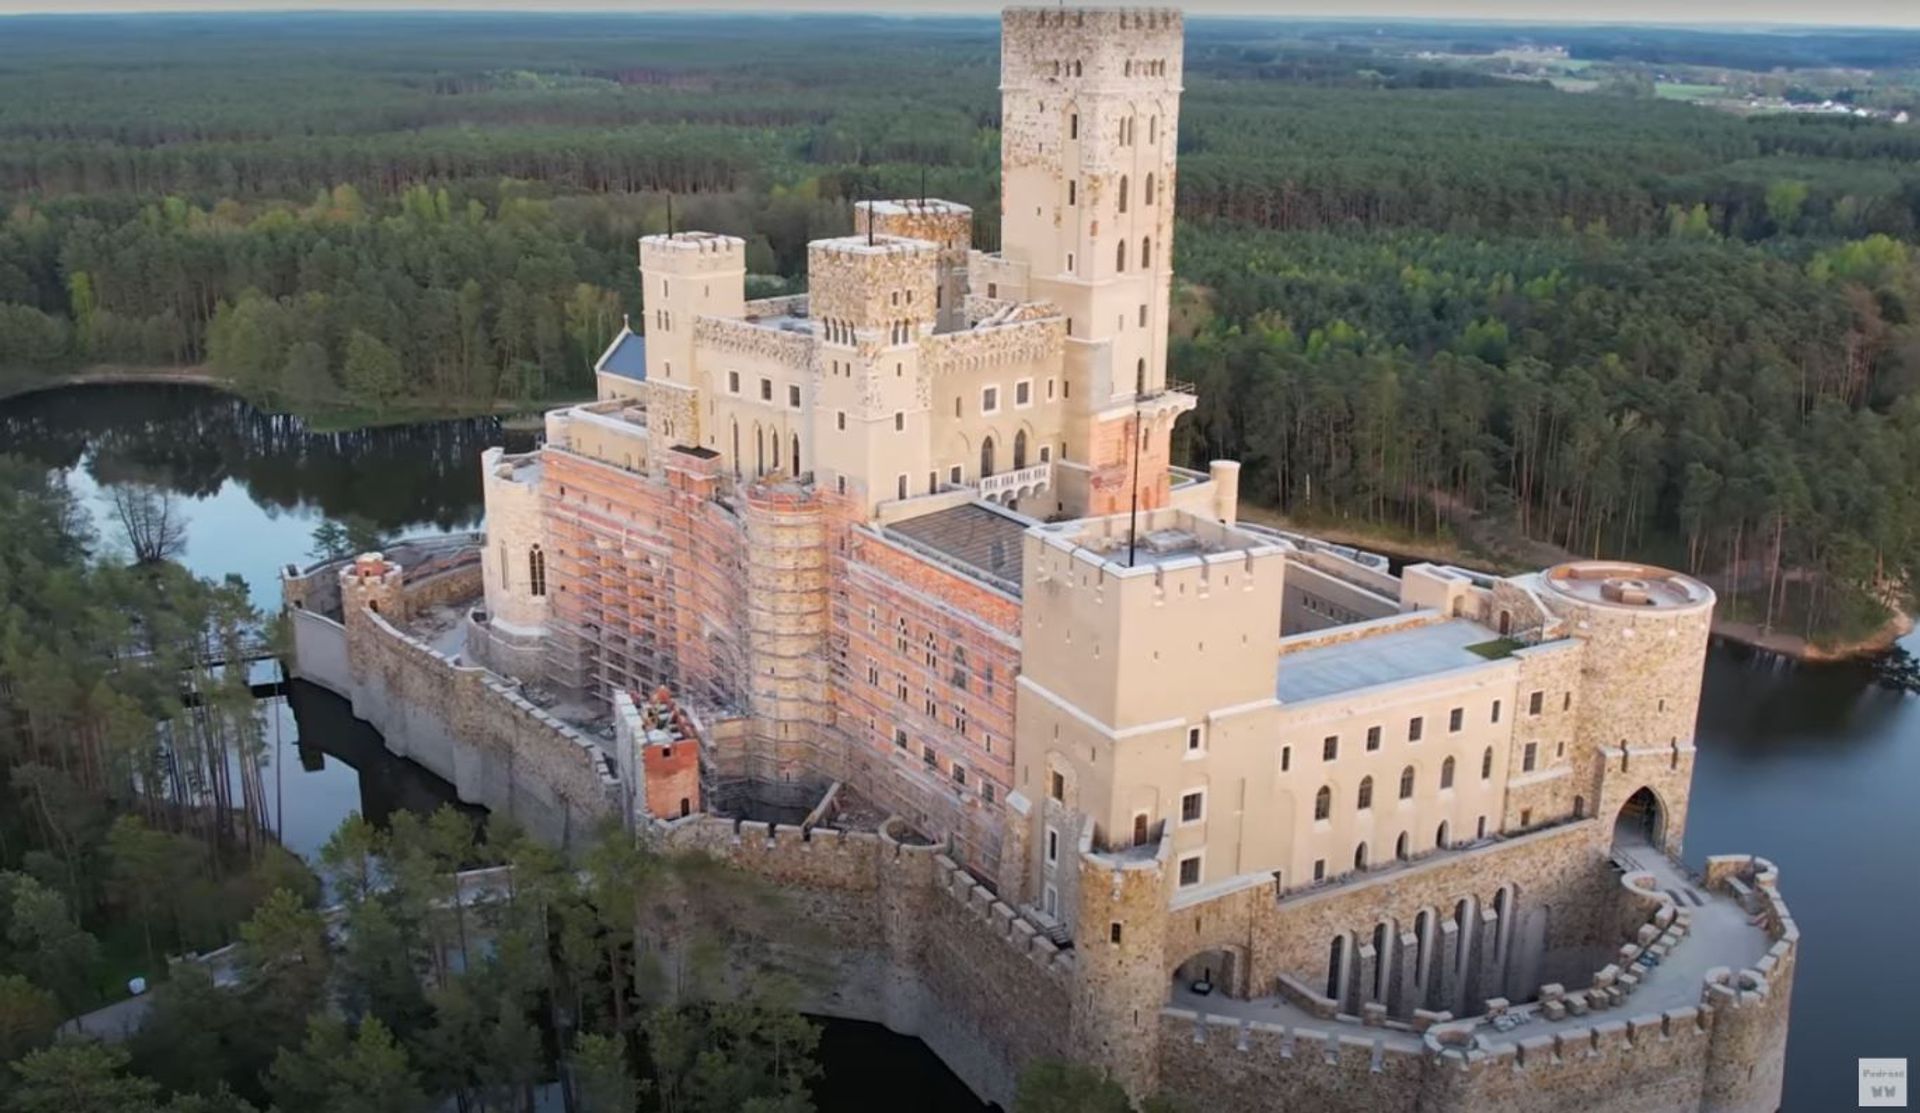 Trwa budowa jednego z najbardziej kontrowersyjnych nowych budynków w Polsce – zamku w Stobnicy 